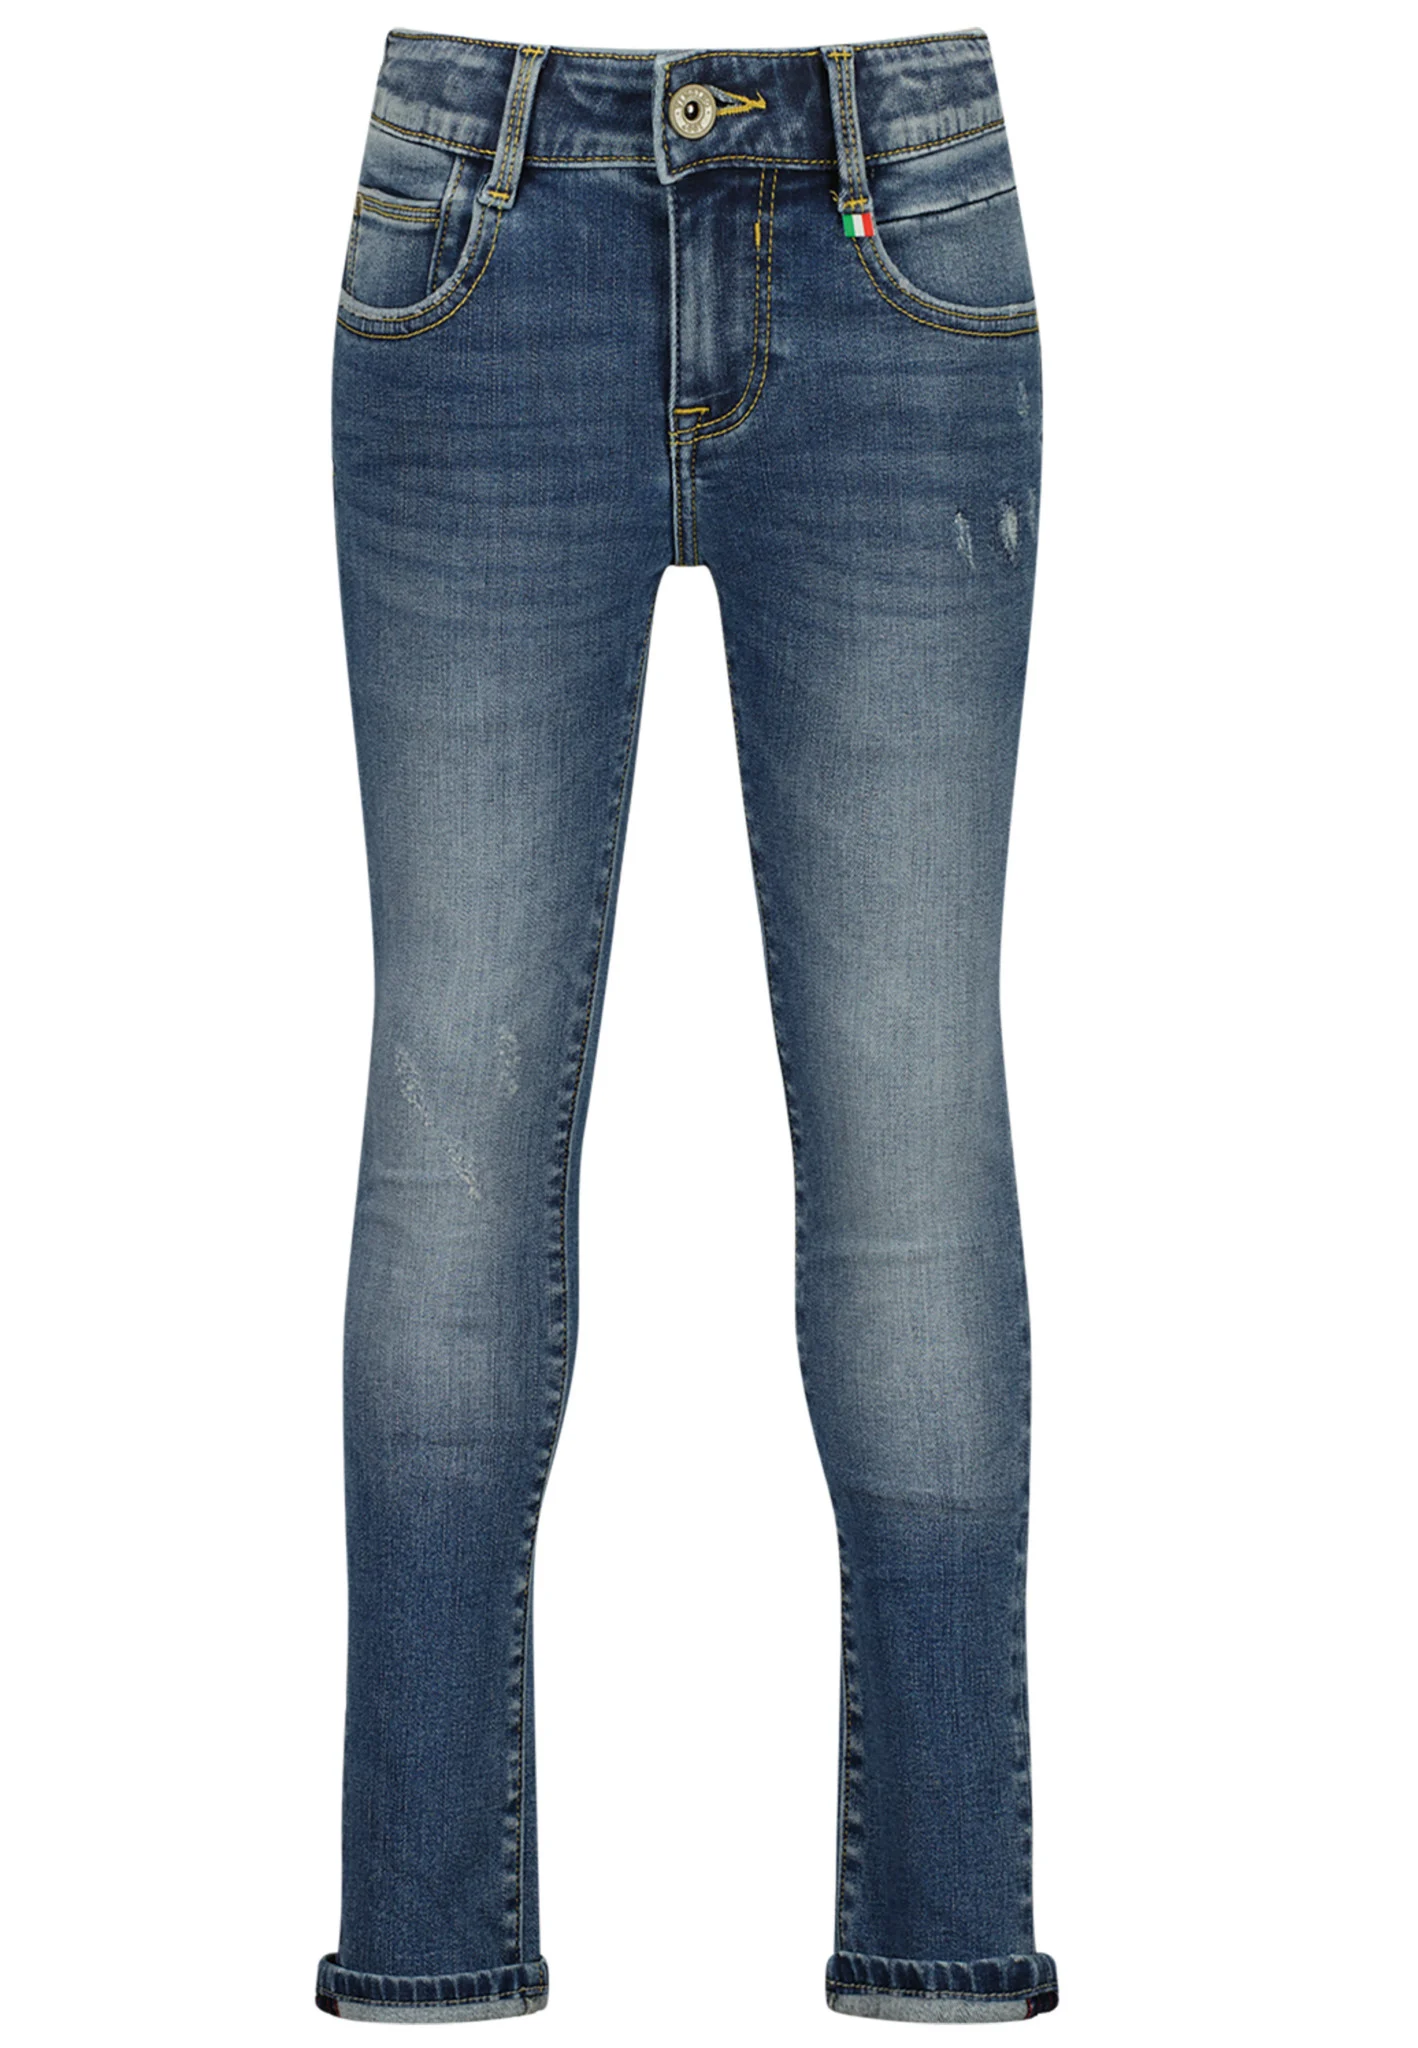 Afbeelding van Vingino Jongens jeans amos skinny fit old vintage